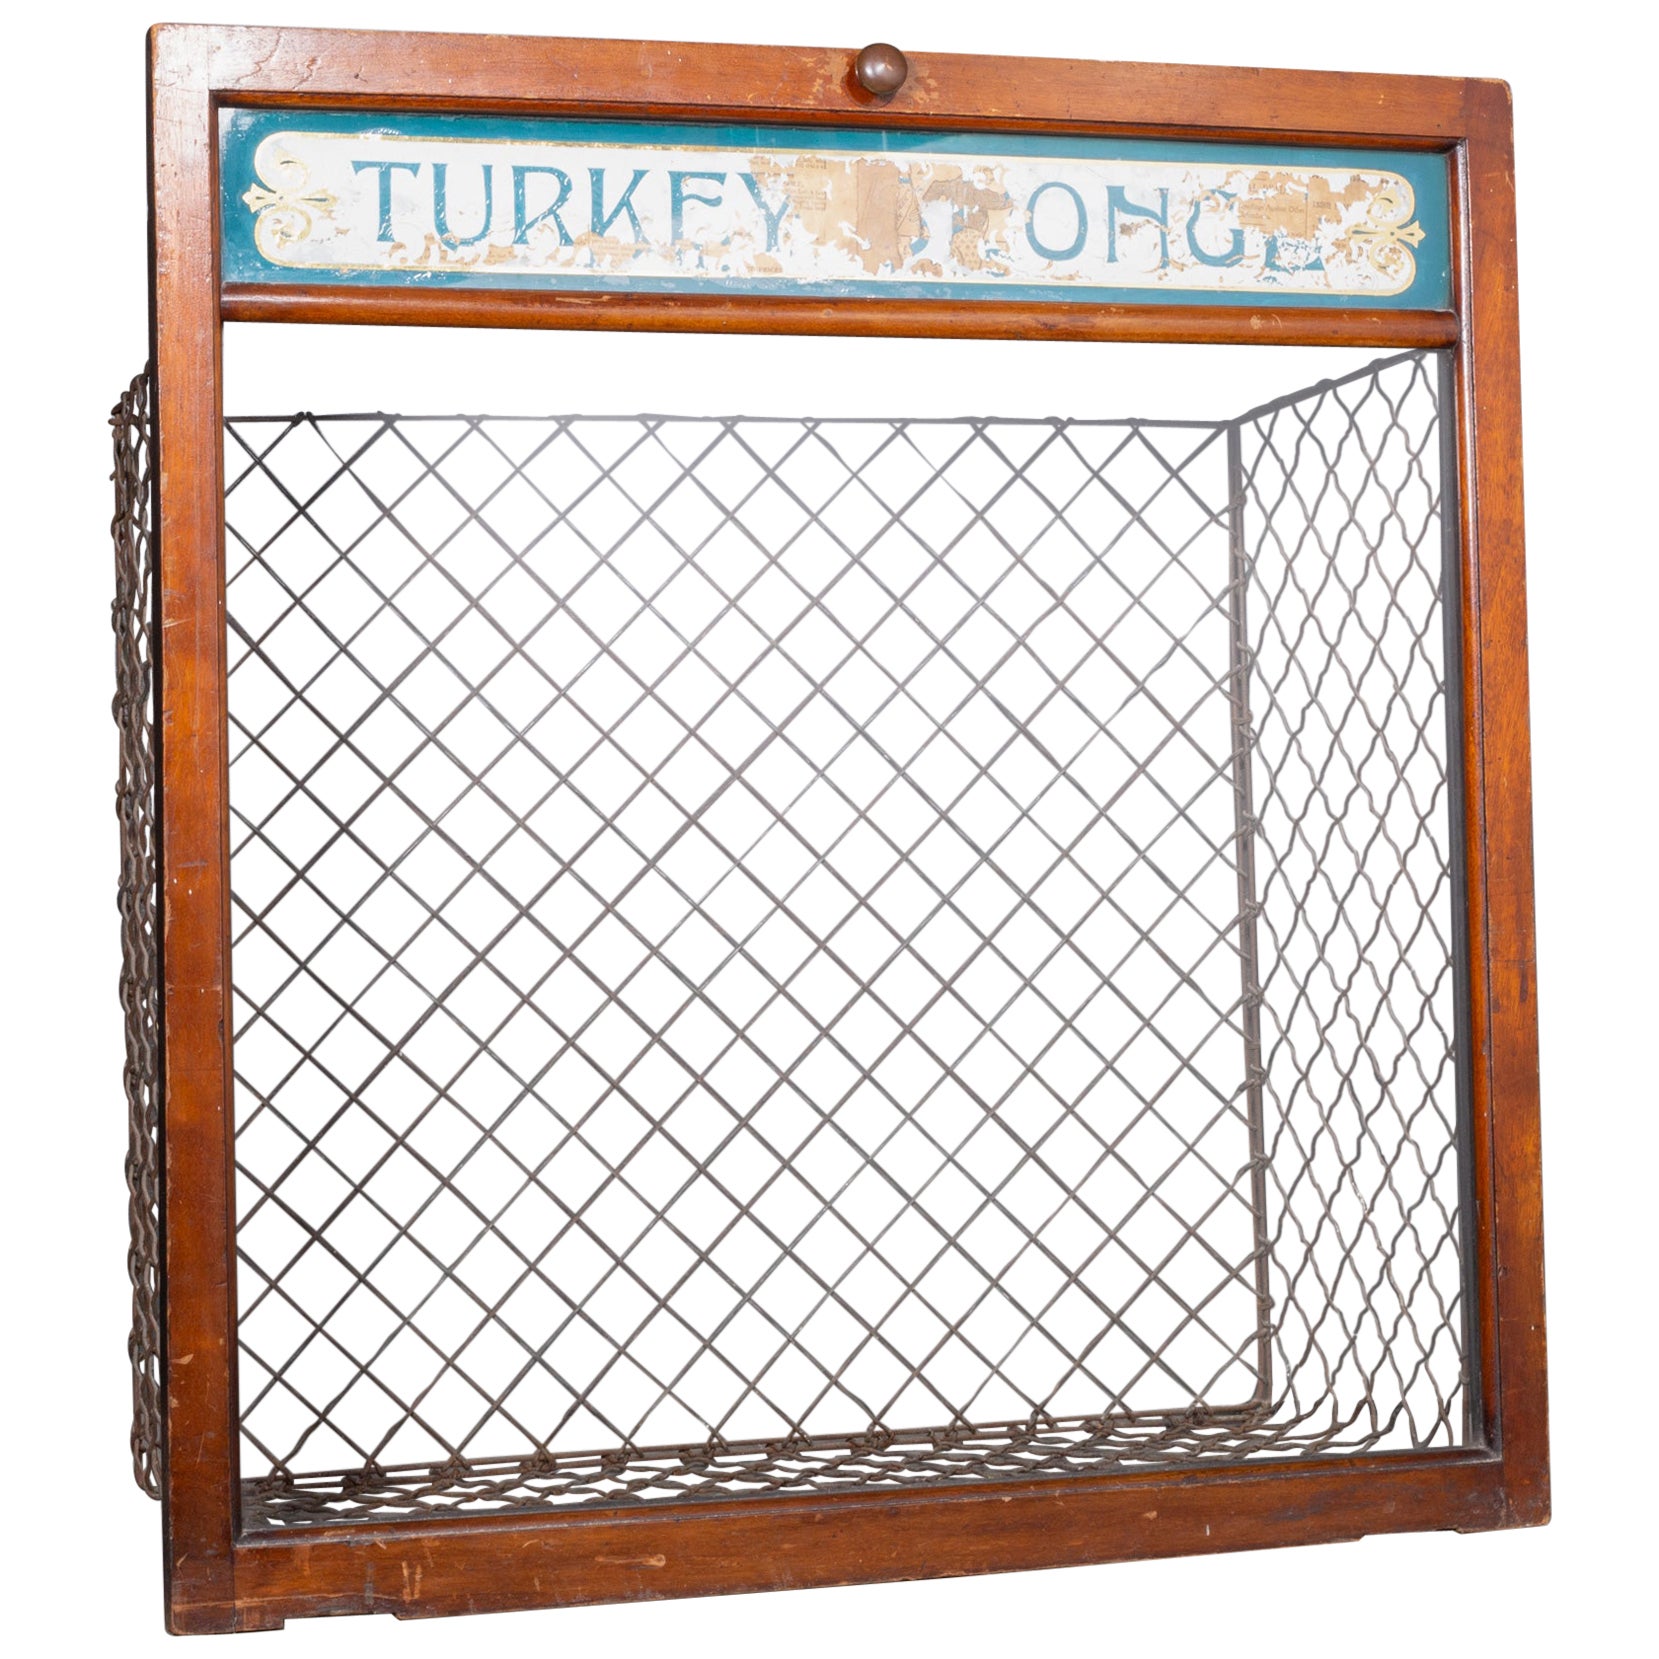 Early 20th c. "Turkey Sponge" Chemist Bin c.1900-1940